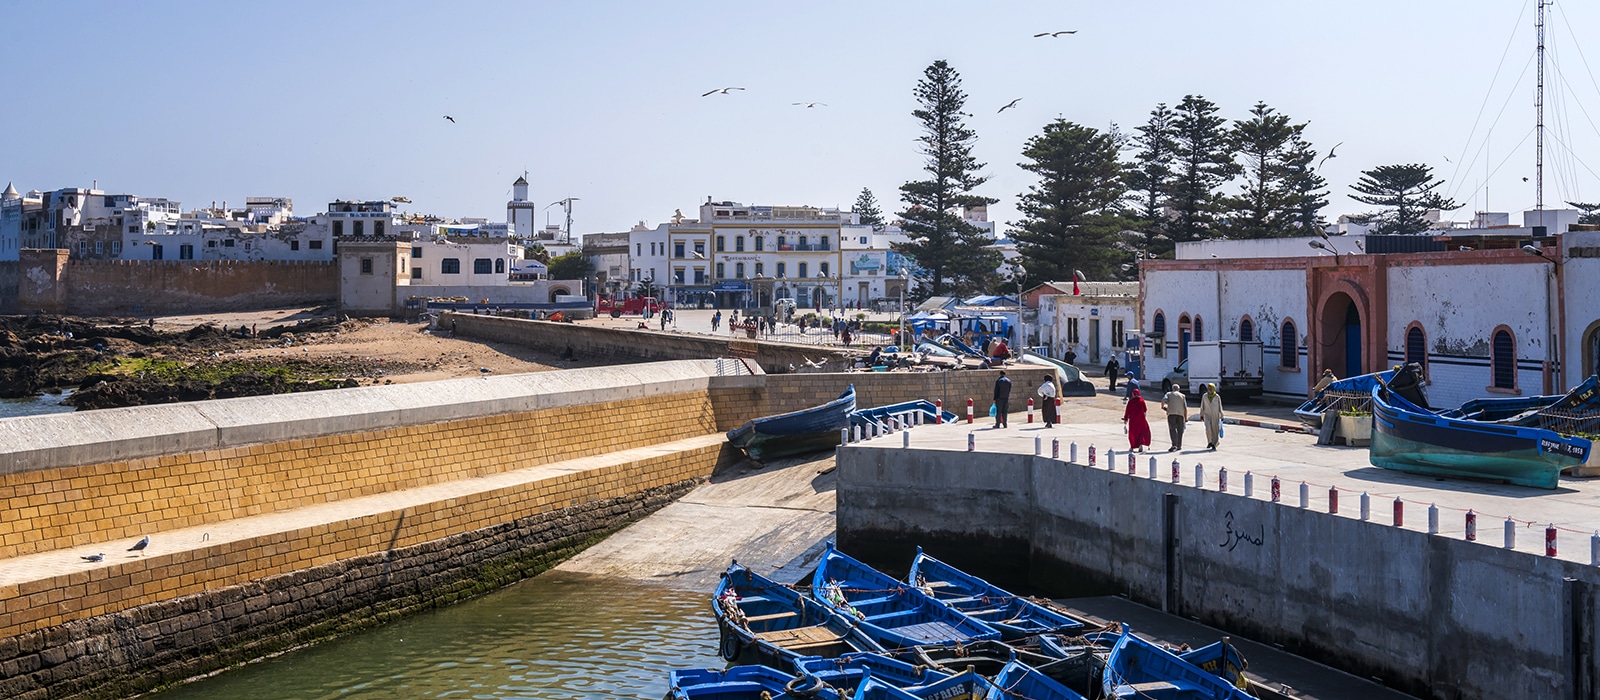 Voyage organisé en petit groupe - Essaouira - Maroc - Agence de voyage Les Routes du Monde